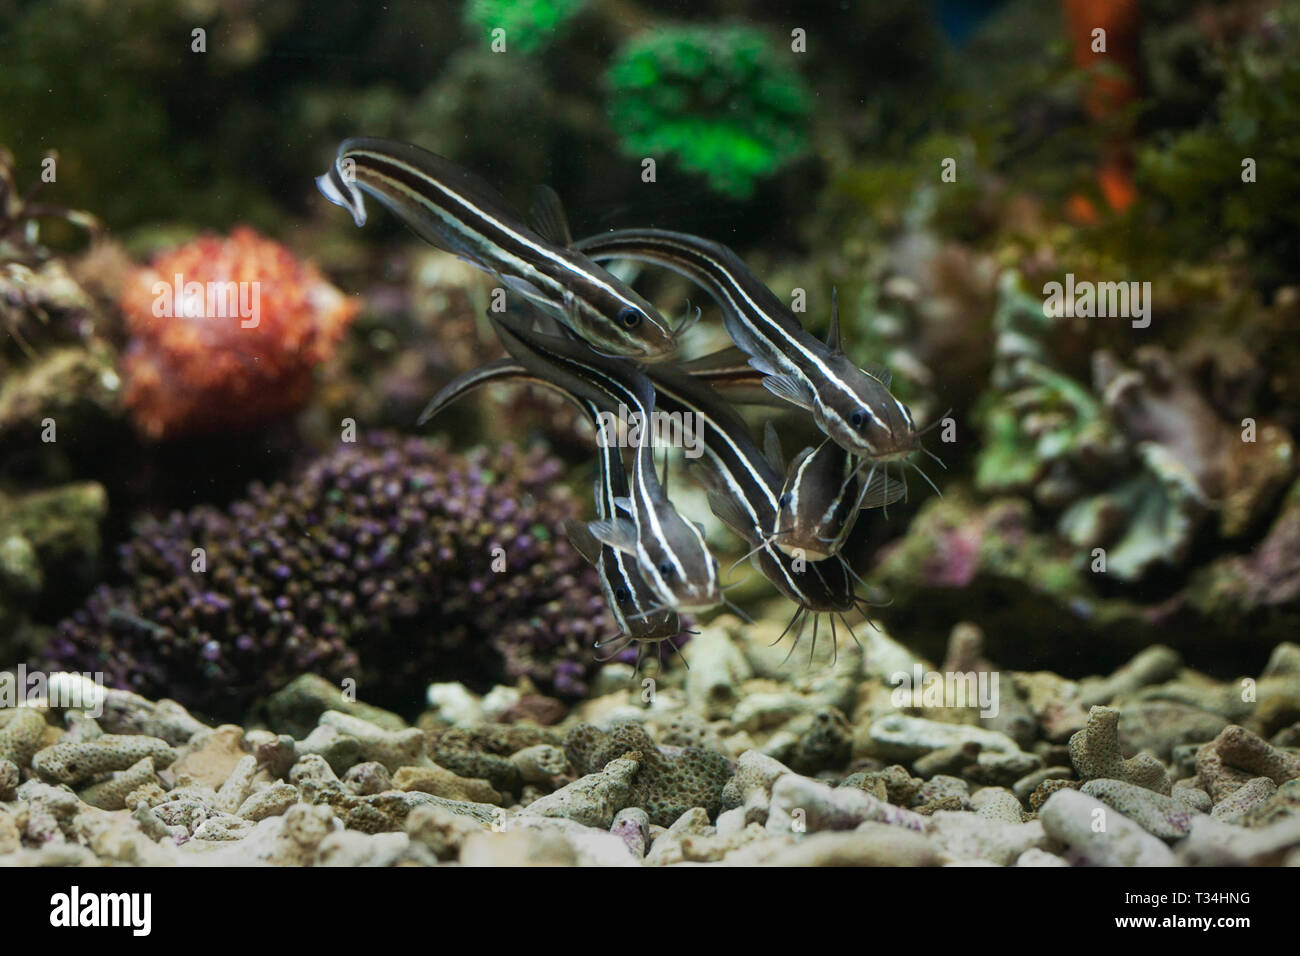 Fish swimming underwater, Indonesia Stock Photo